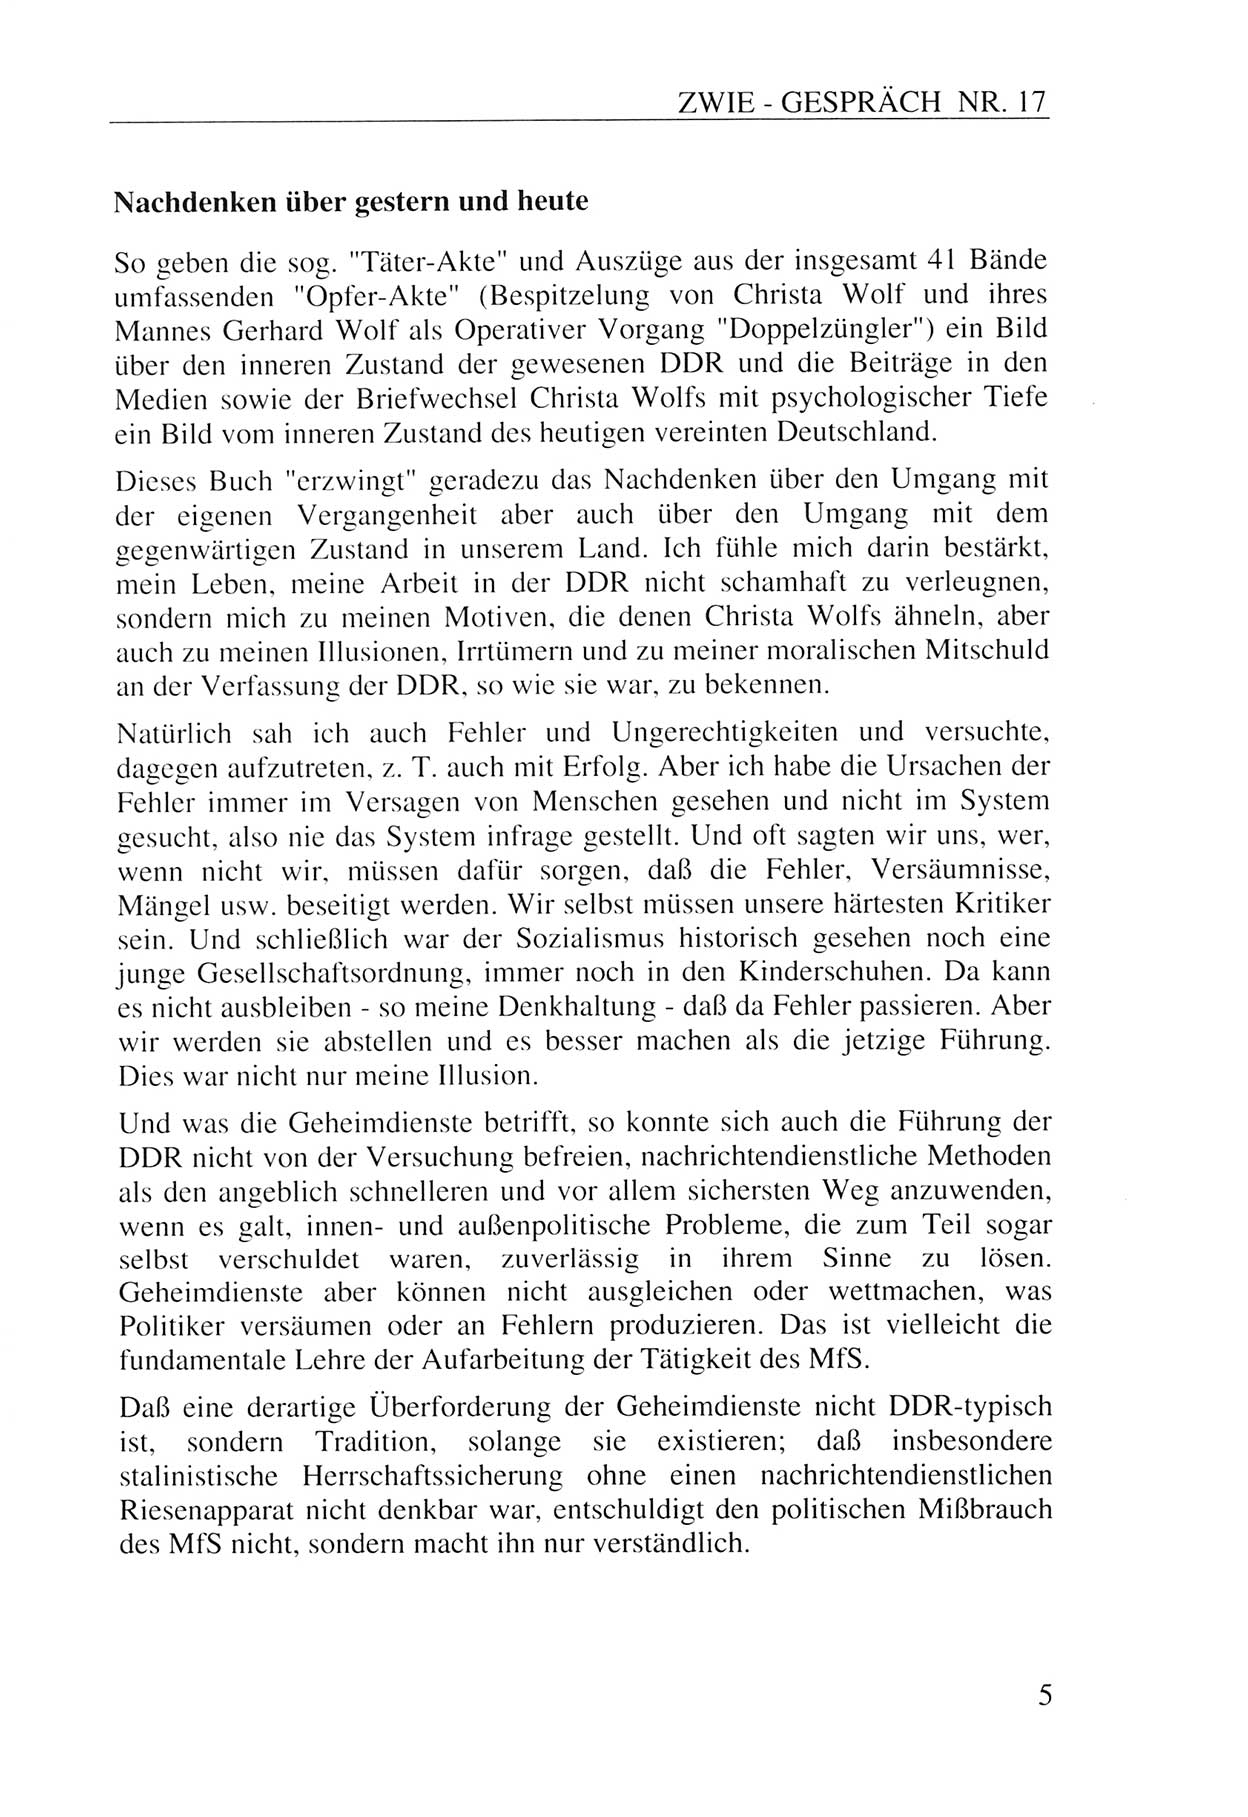 Zwie-Gespräch, Beiträge zur Aufarbeitung der Staatssicherheits-Vergangenheit [Deutsche Demokratische Republik (DDR)], Ausgabe Nr. 17, Berlin 1993, Seite 5 (Zwie-Gespr. Ausg. 17 1993, S. 5)